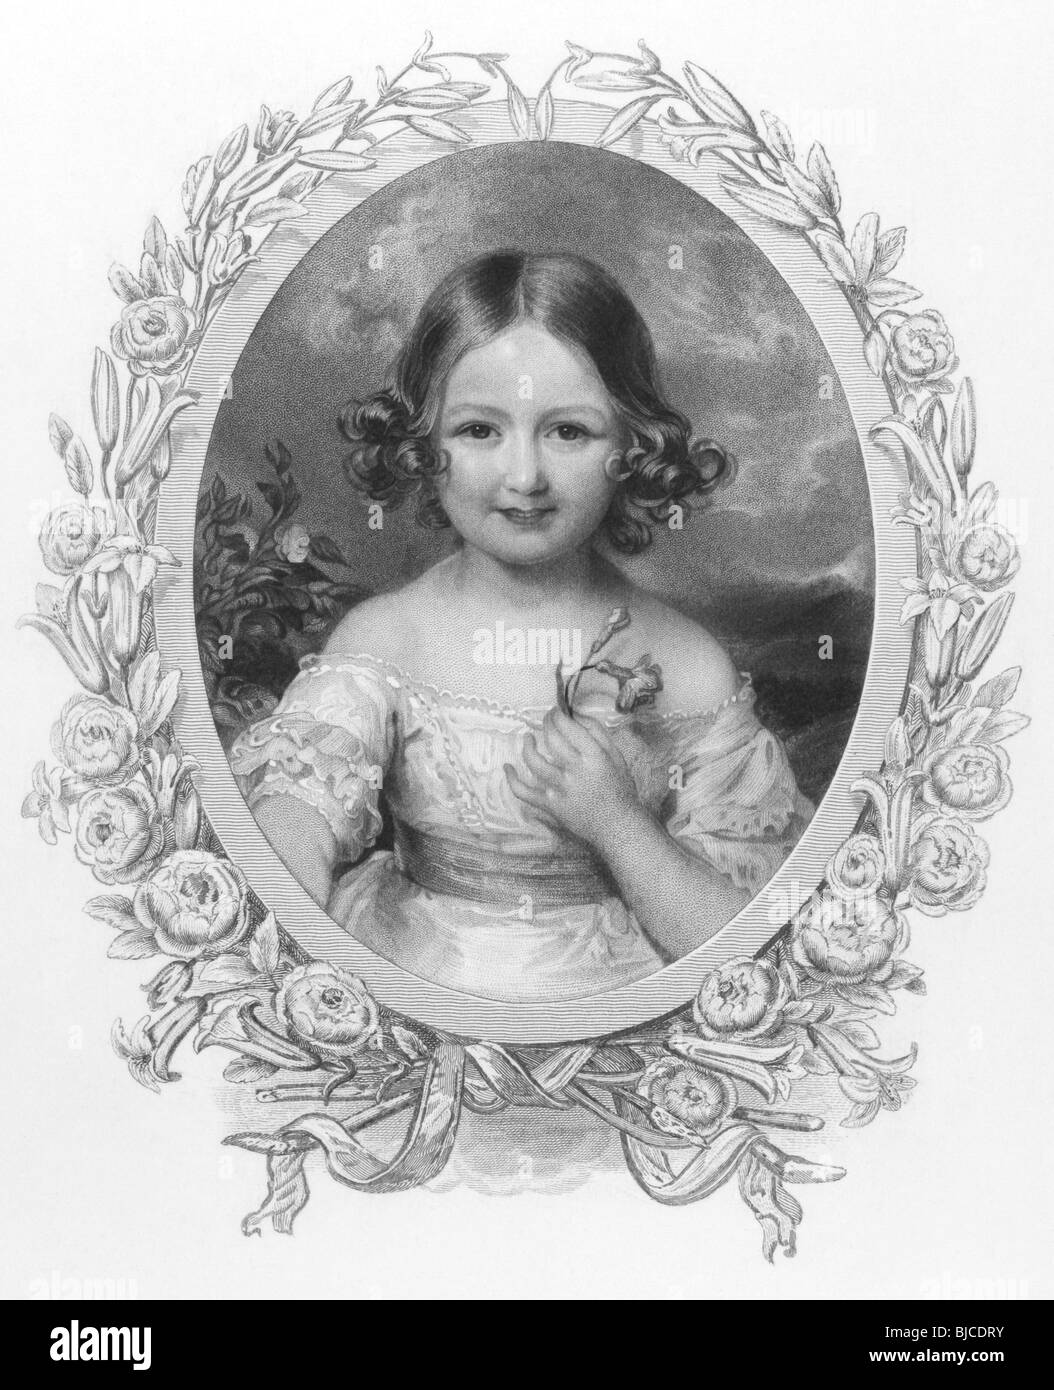 Prinzessin Adelaide (1835-1900) von Hohenlohe-Langenburg auf Gravur aus den 1800er Jahren. Nichte von Königin Victoria. Stockfoto